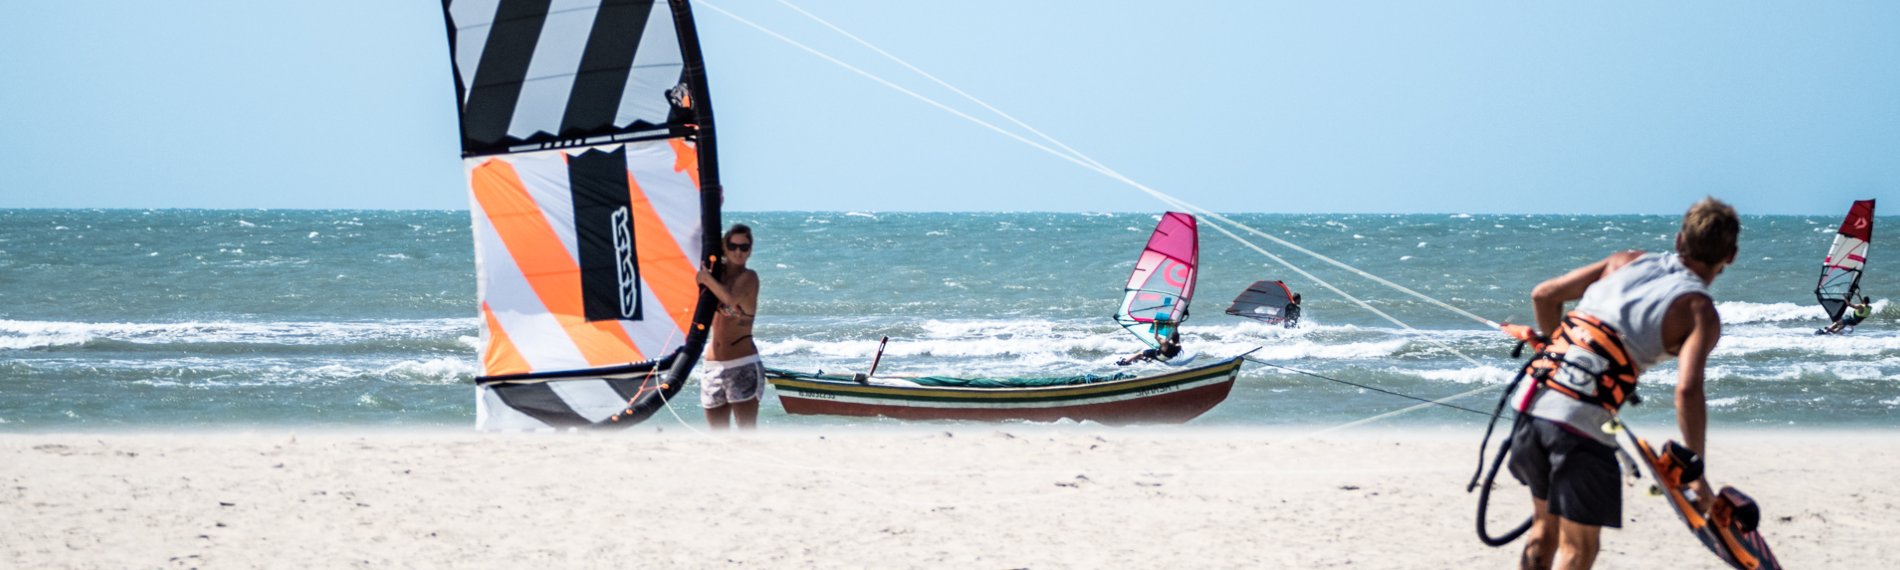 Windsurfer und Kitesurfer am sonnigen Strand von Maceio, Brasilien mit klarem Himmel.